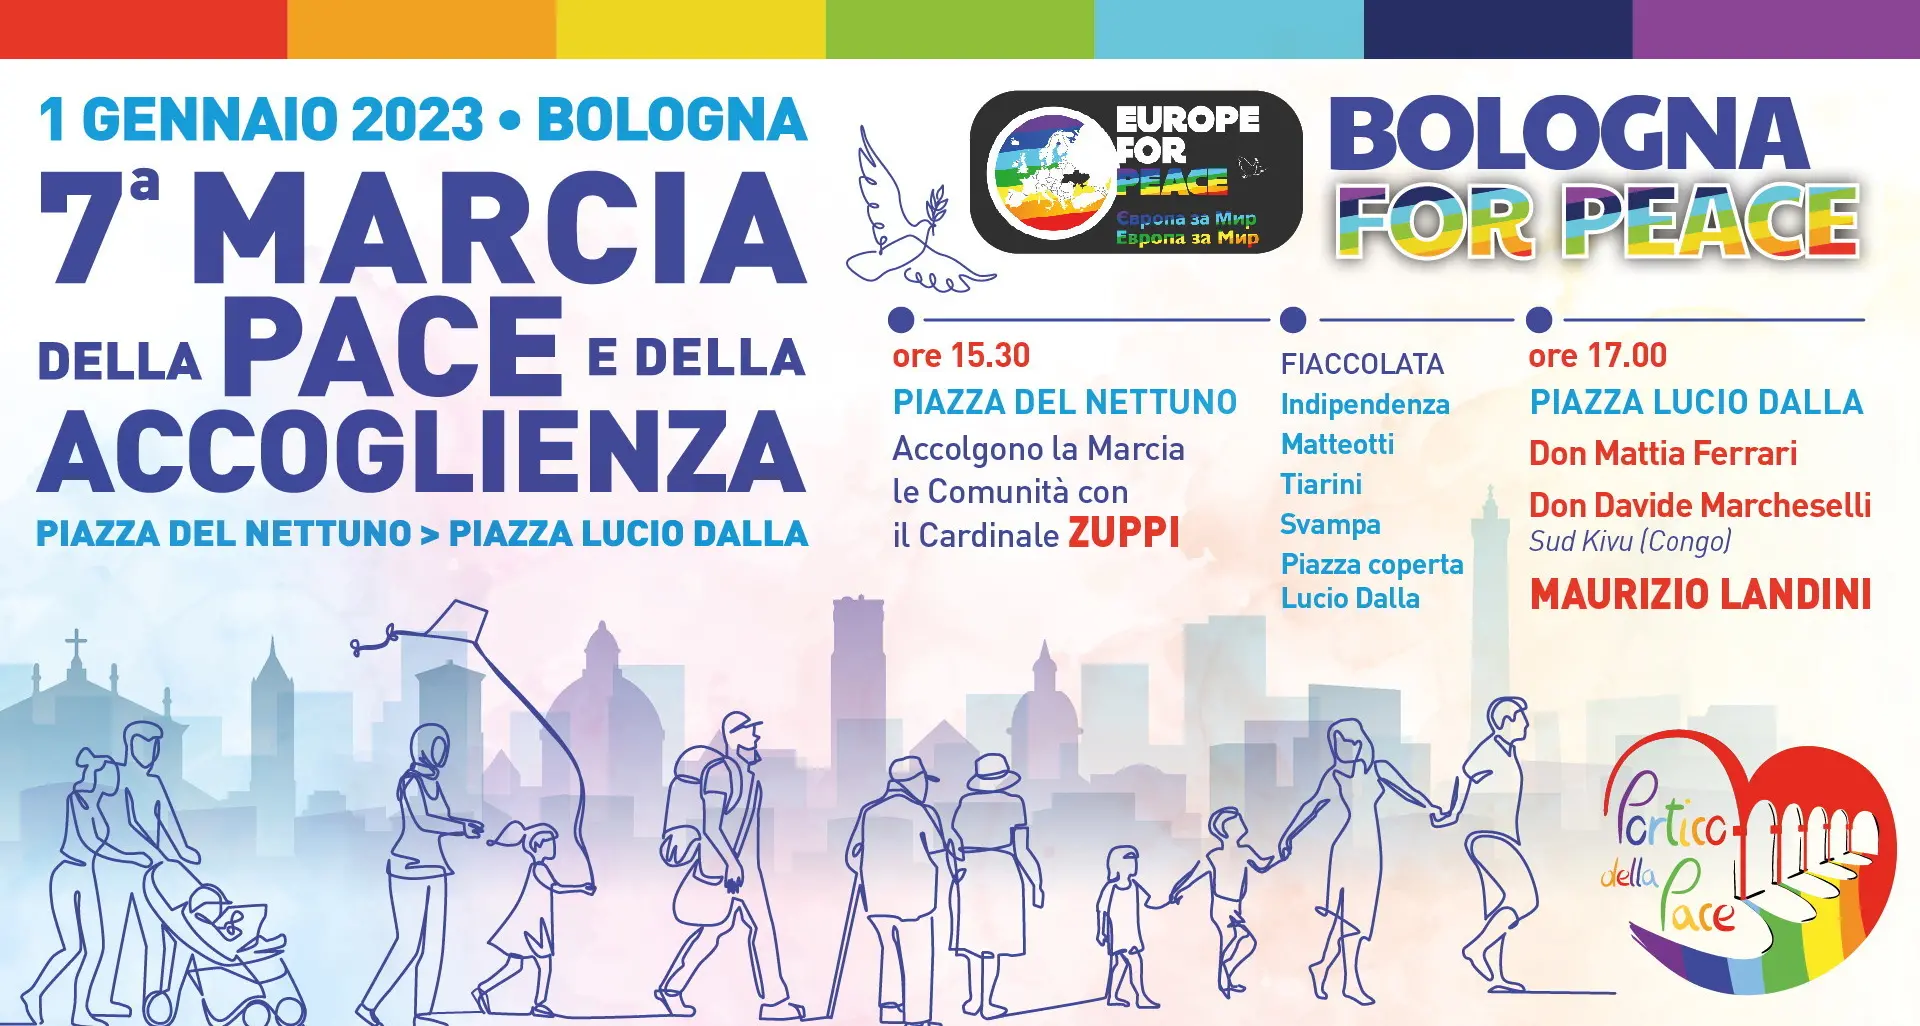 Settima edizione Marcia della pace e dell'accoglienza. 1 gennaio 2023 a Bologna, conclude Maurizio Landini